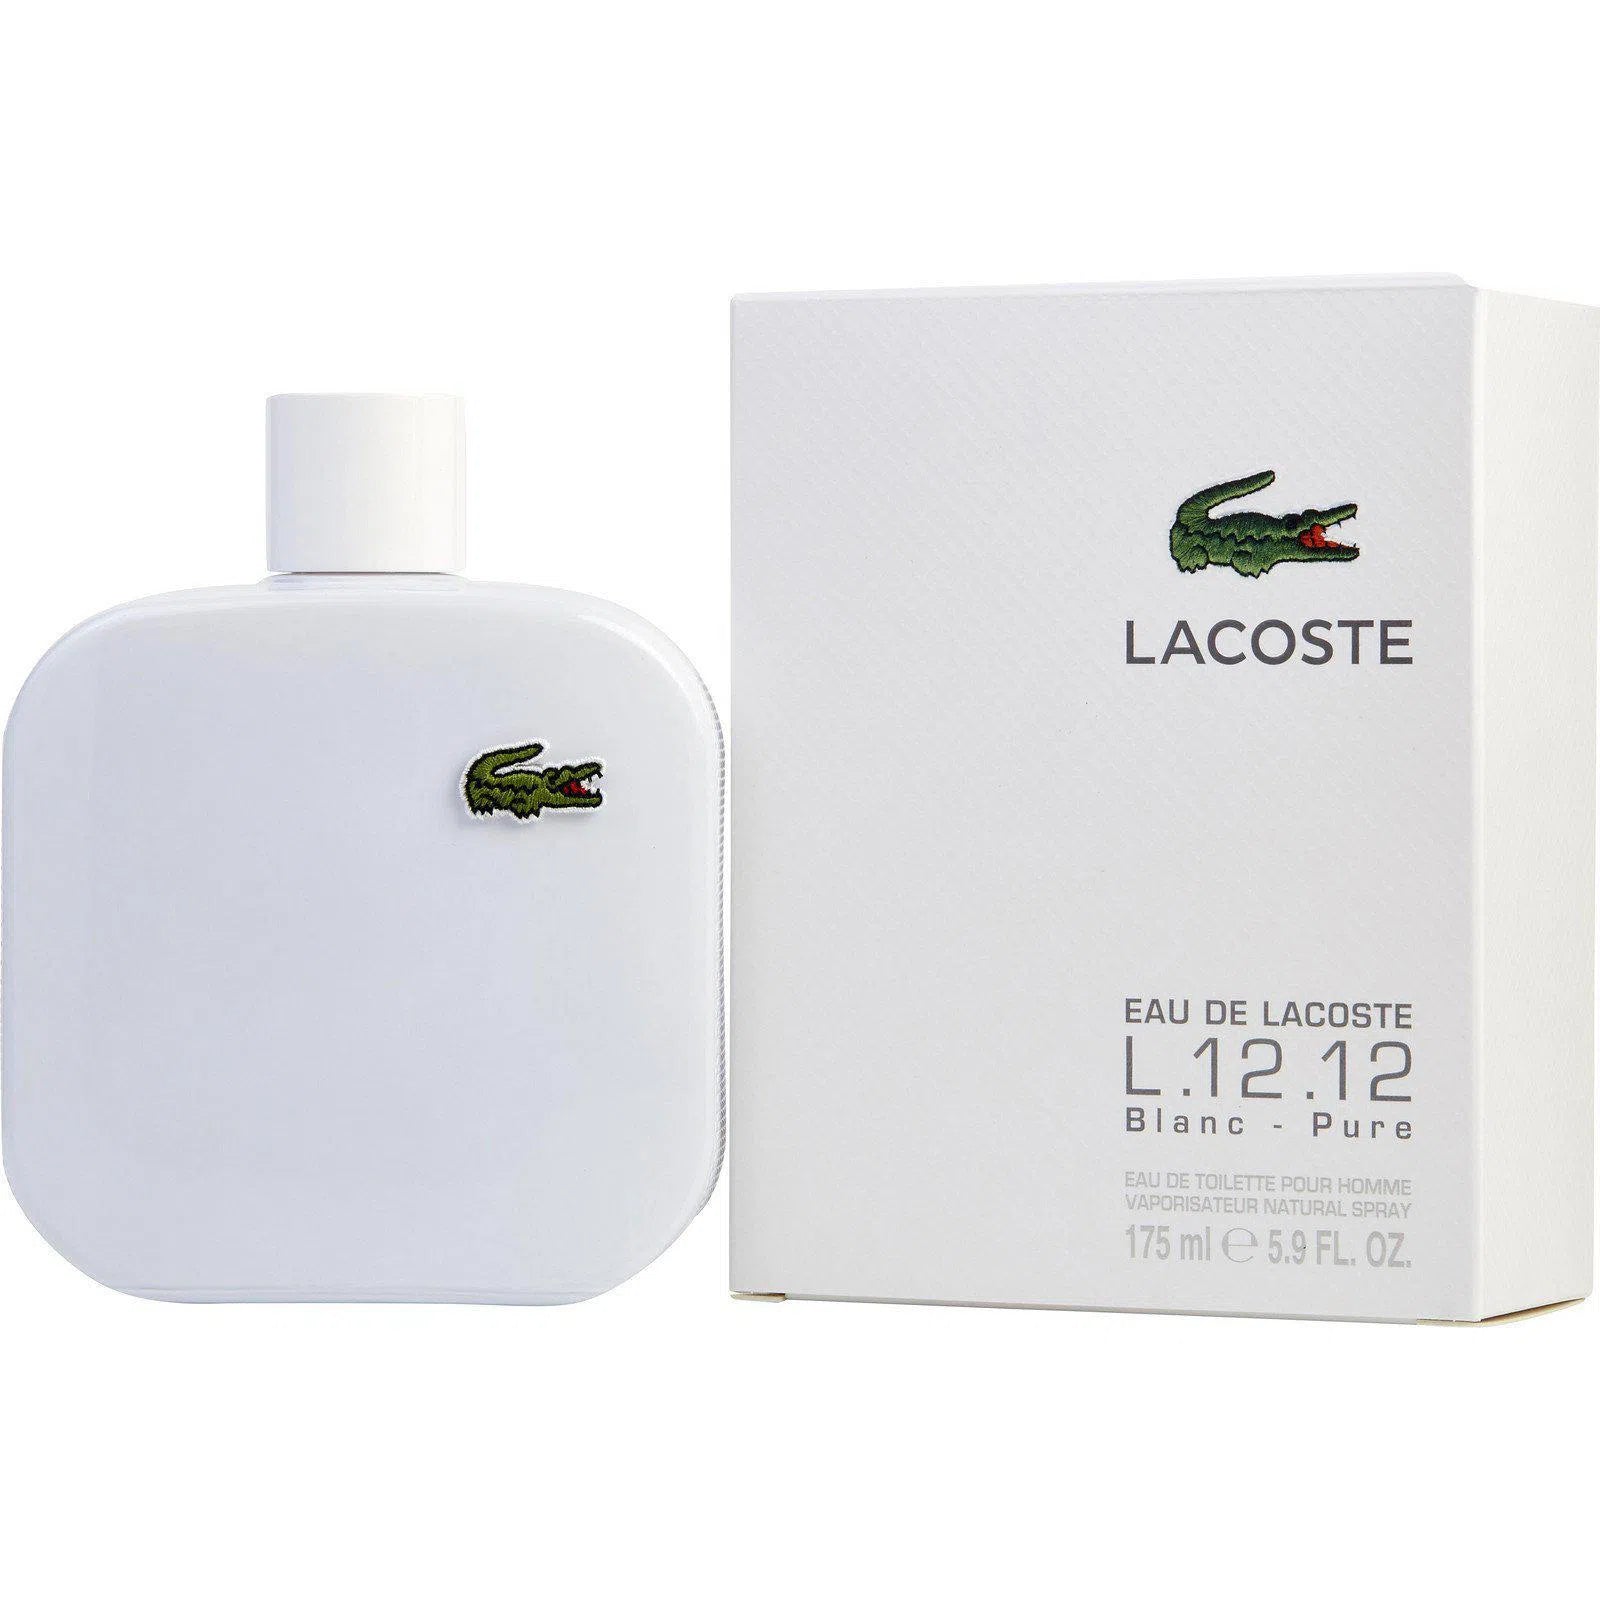 Perfume Lacoste L.12.12 Blanc - Pure EDT (M) / 175 ml - 737052896045- Prive Perfumes Honduras